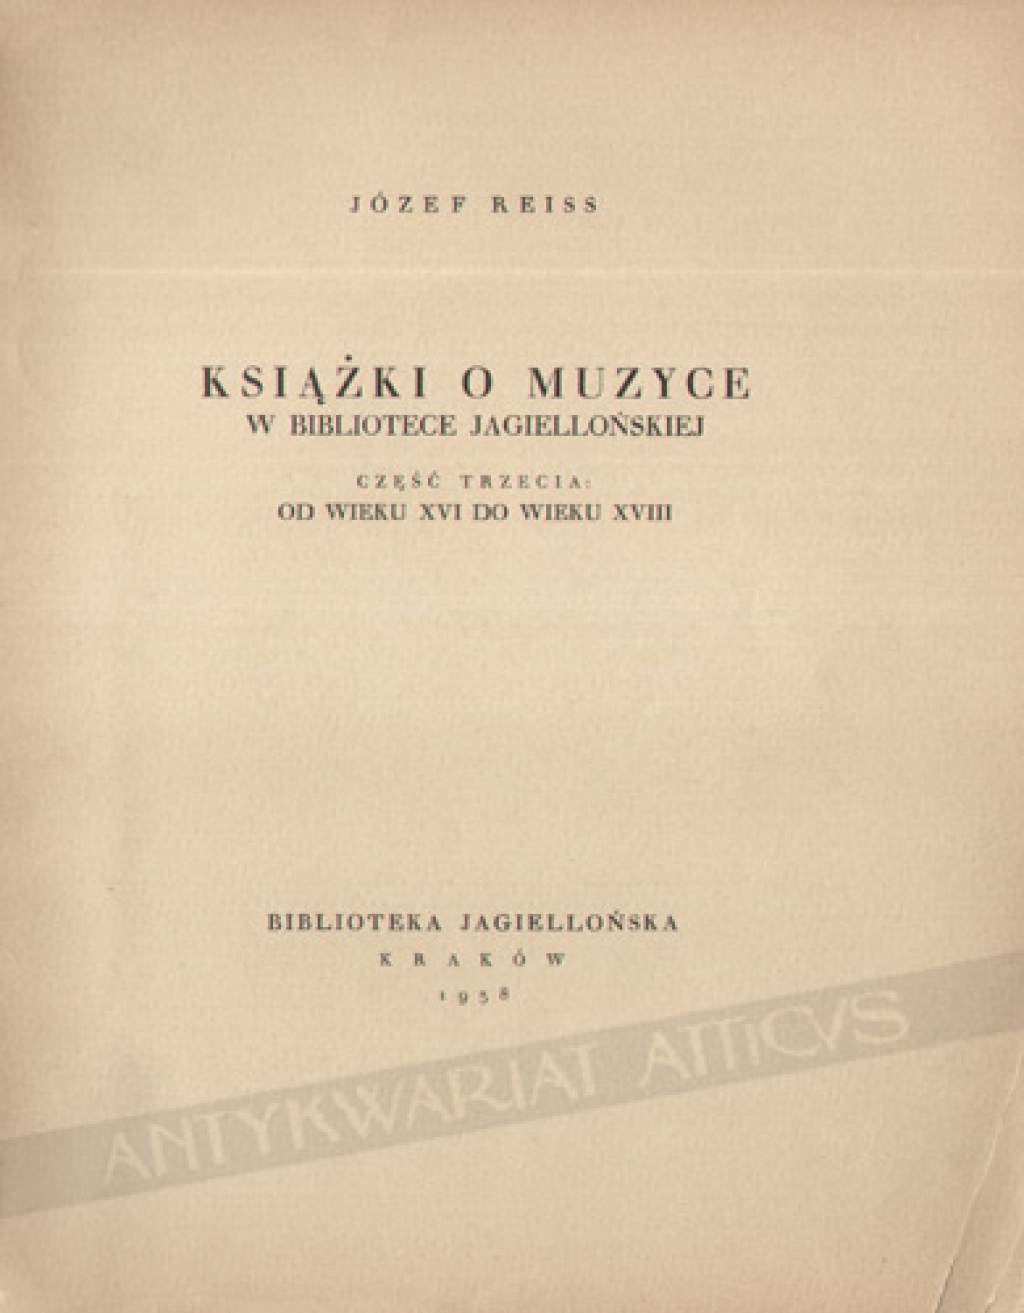 Książki o muzyce w Bibliotece Jagiellońskiej, cz. III od wieku XVI do wieku XVIII